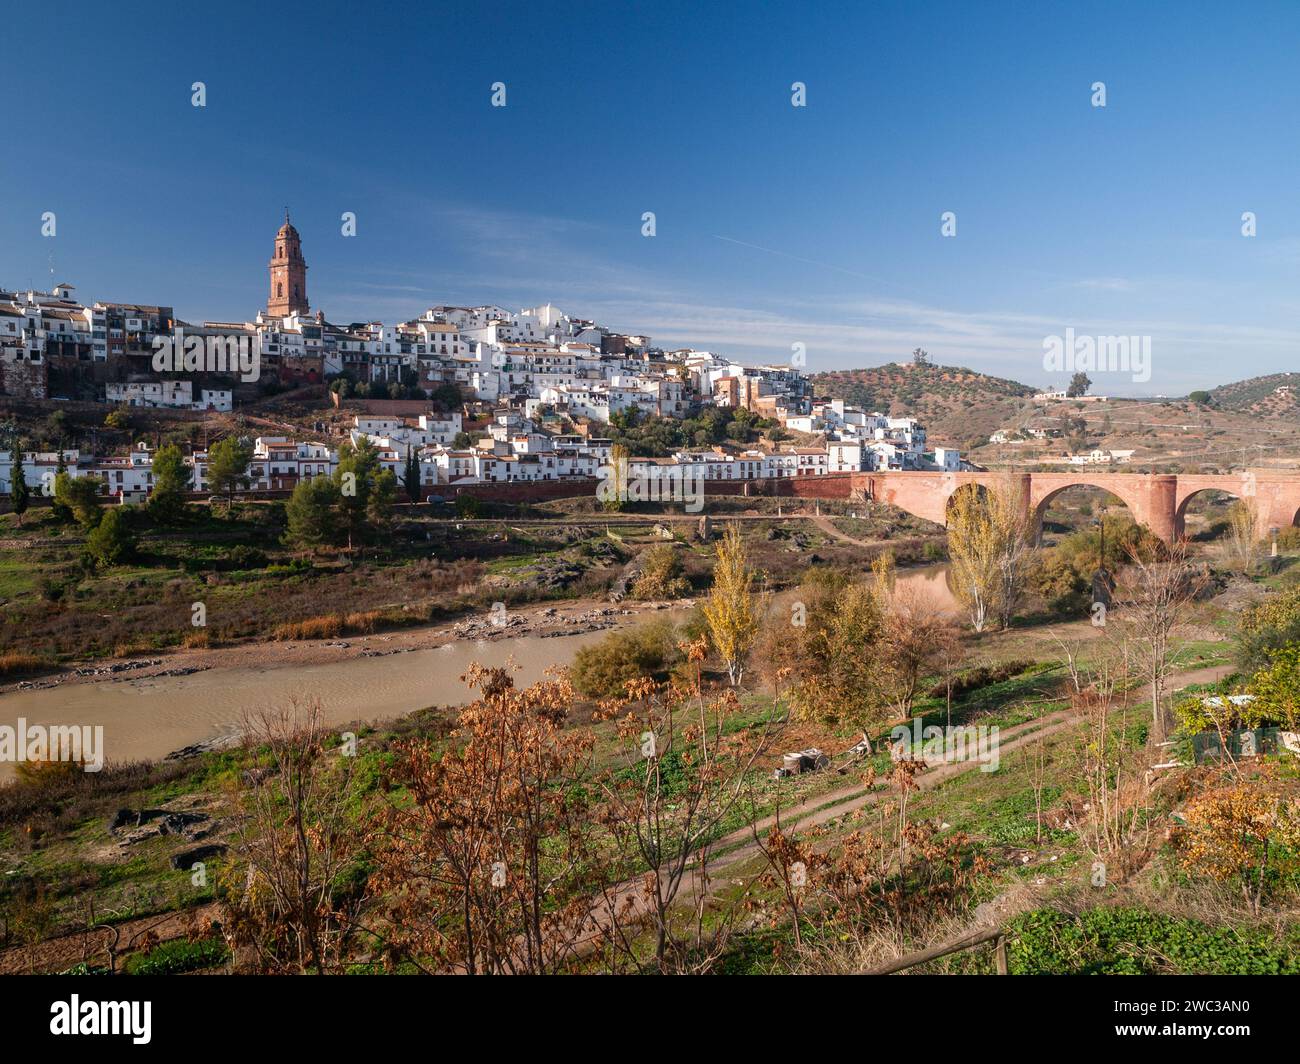 Vue panoramique sur le village andalou typique avec des maisons blanches, une rivière et un pont. Montoro, Cordoue, Espagne. Banque D'Images